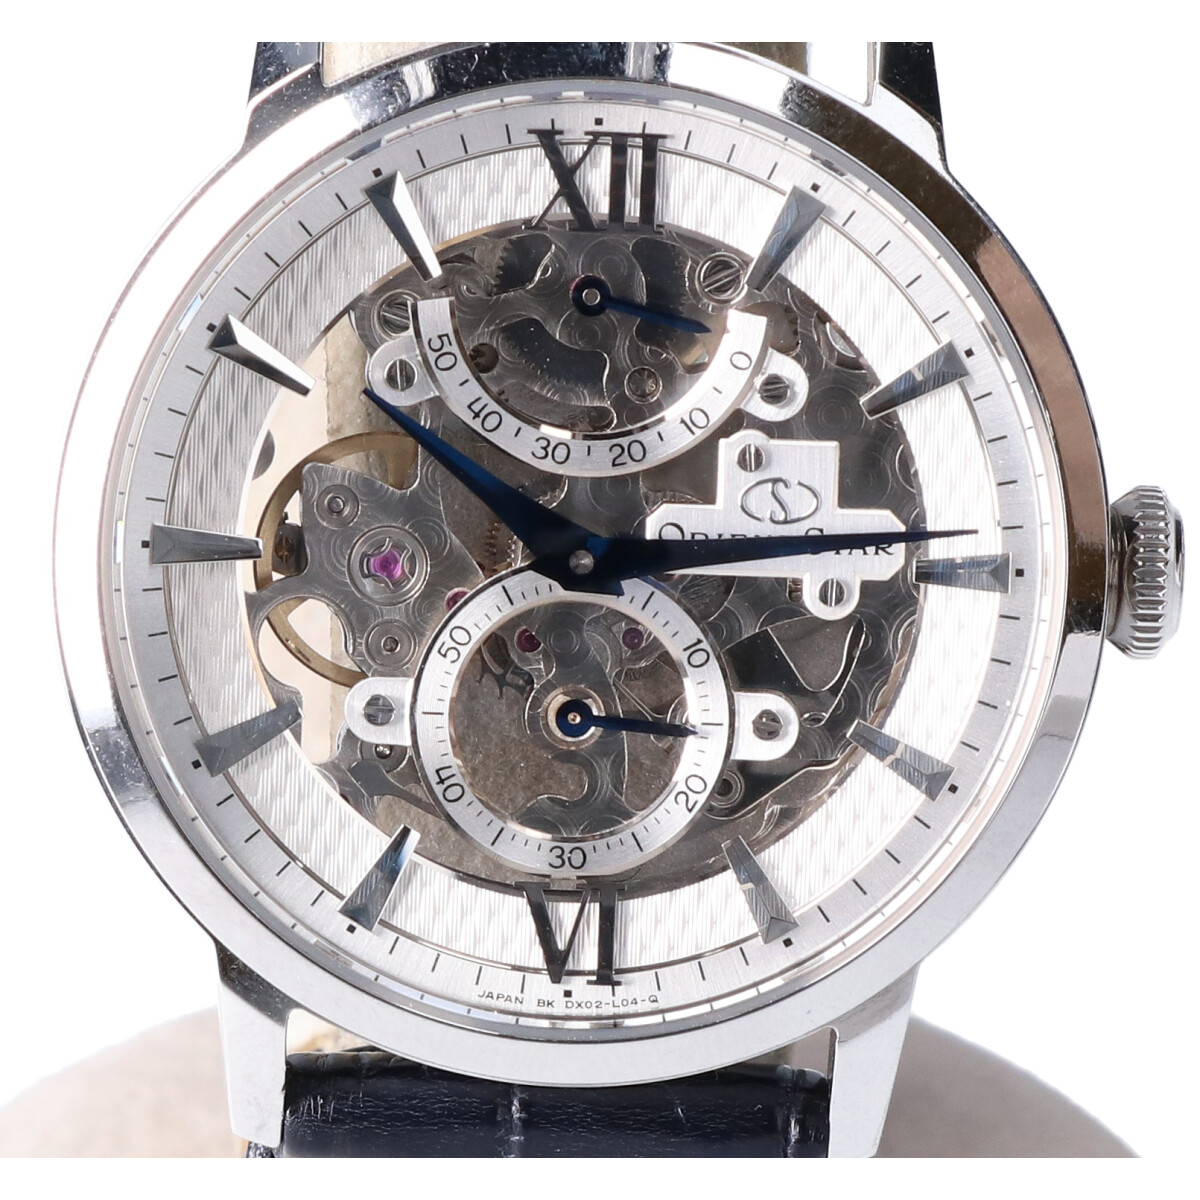 オリエントのオリエントスター RK-DX0001S cal.48E52 SKELETON スモールセコンド 手巻き時計の買取実績です。